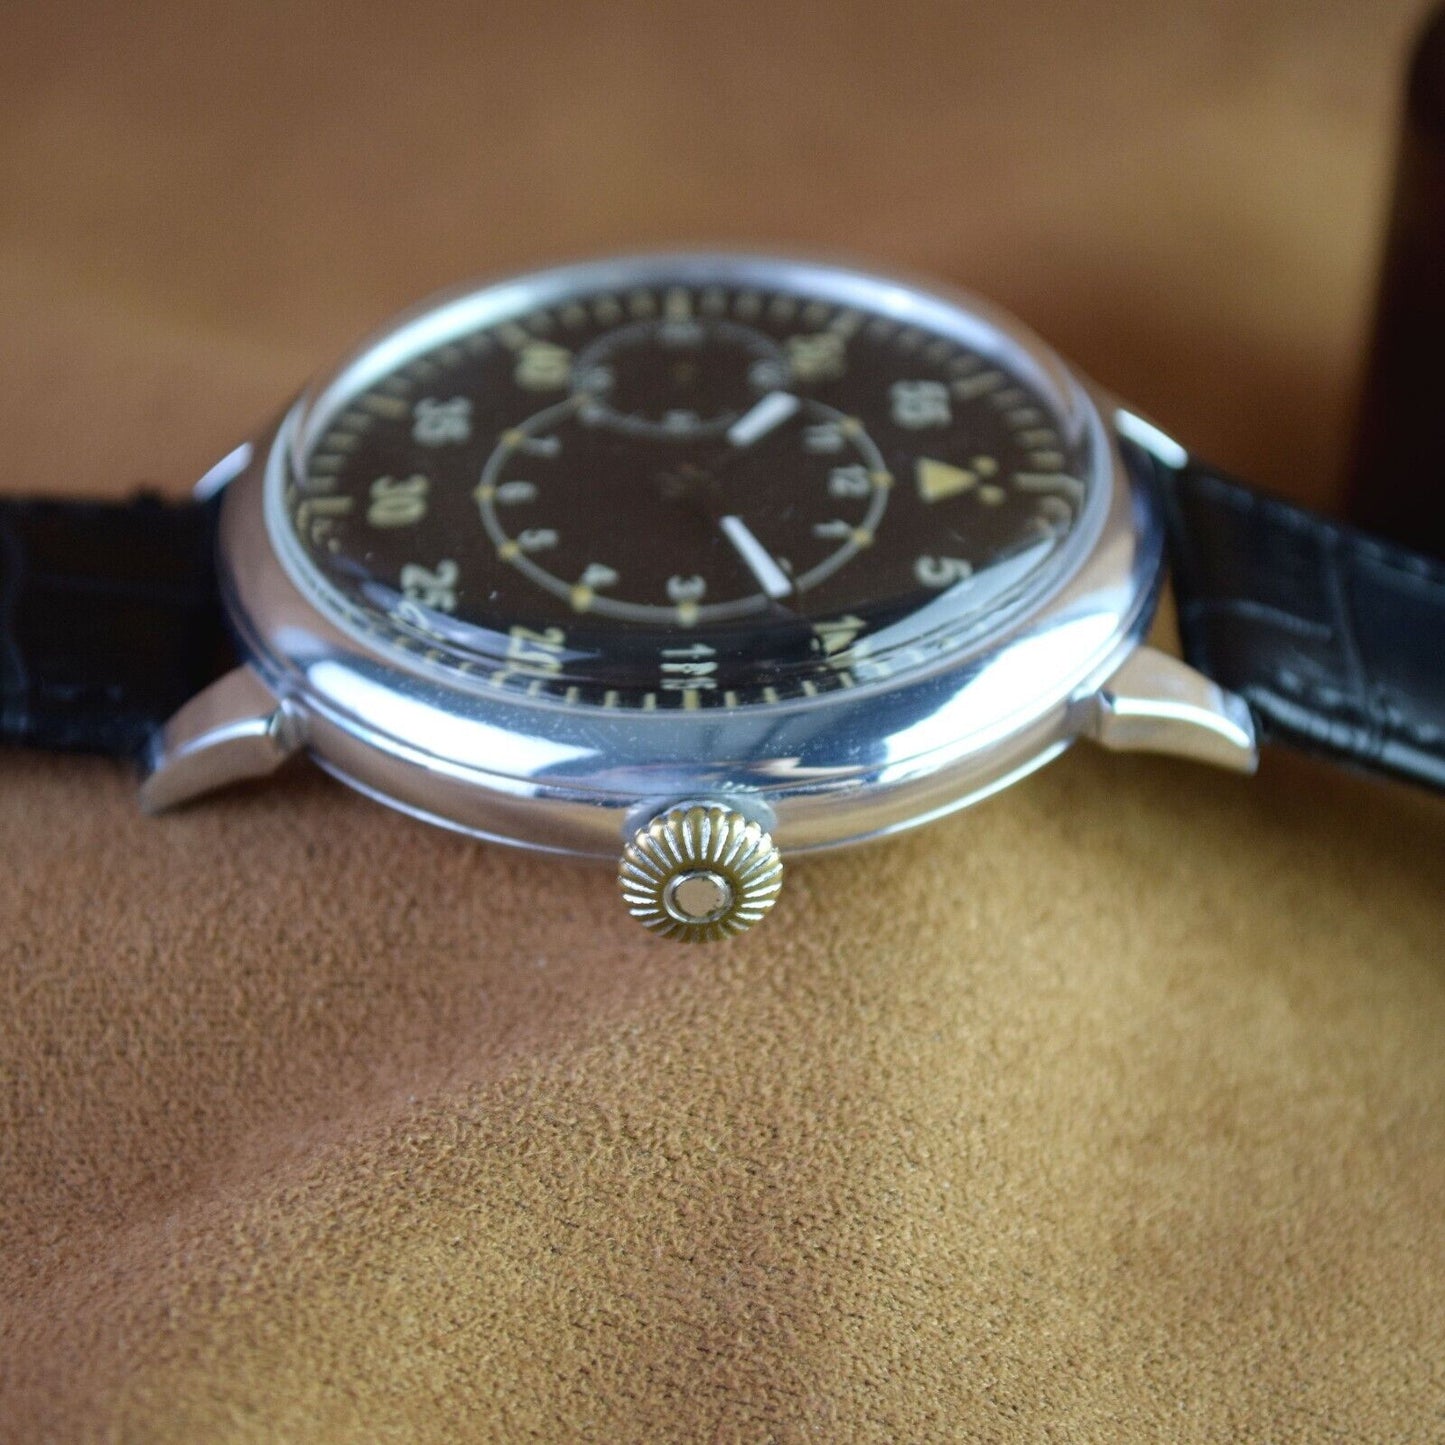 Soviet Wristwatch ZIM LACO Vintage Mens Watch Aviator Version Montre Homme USSR